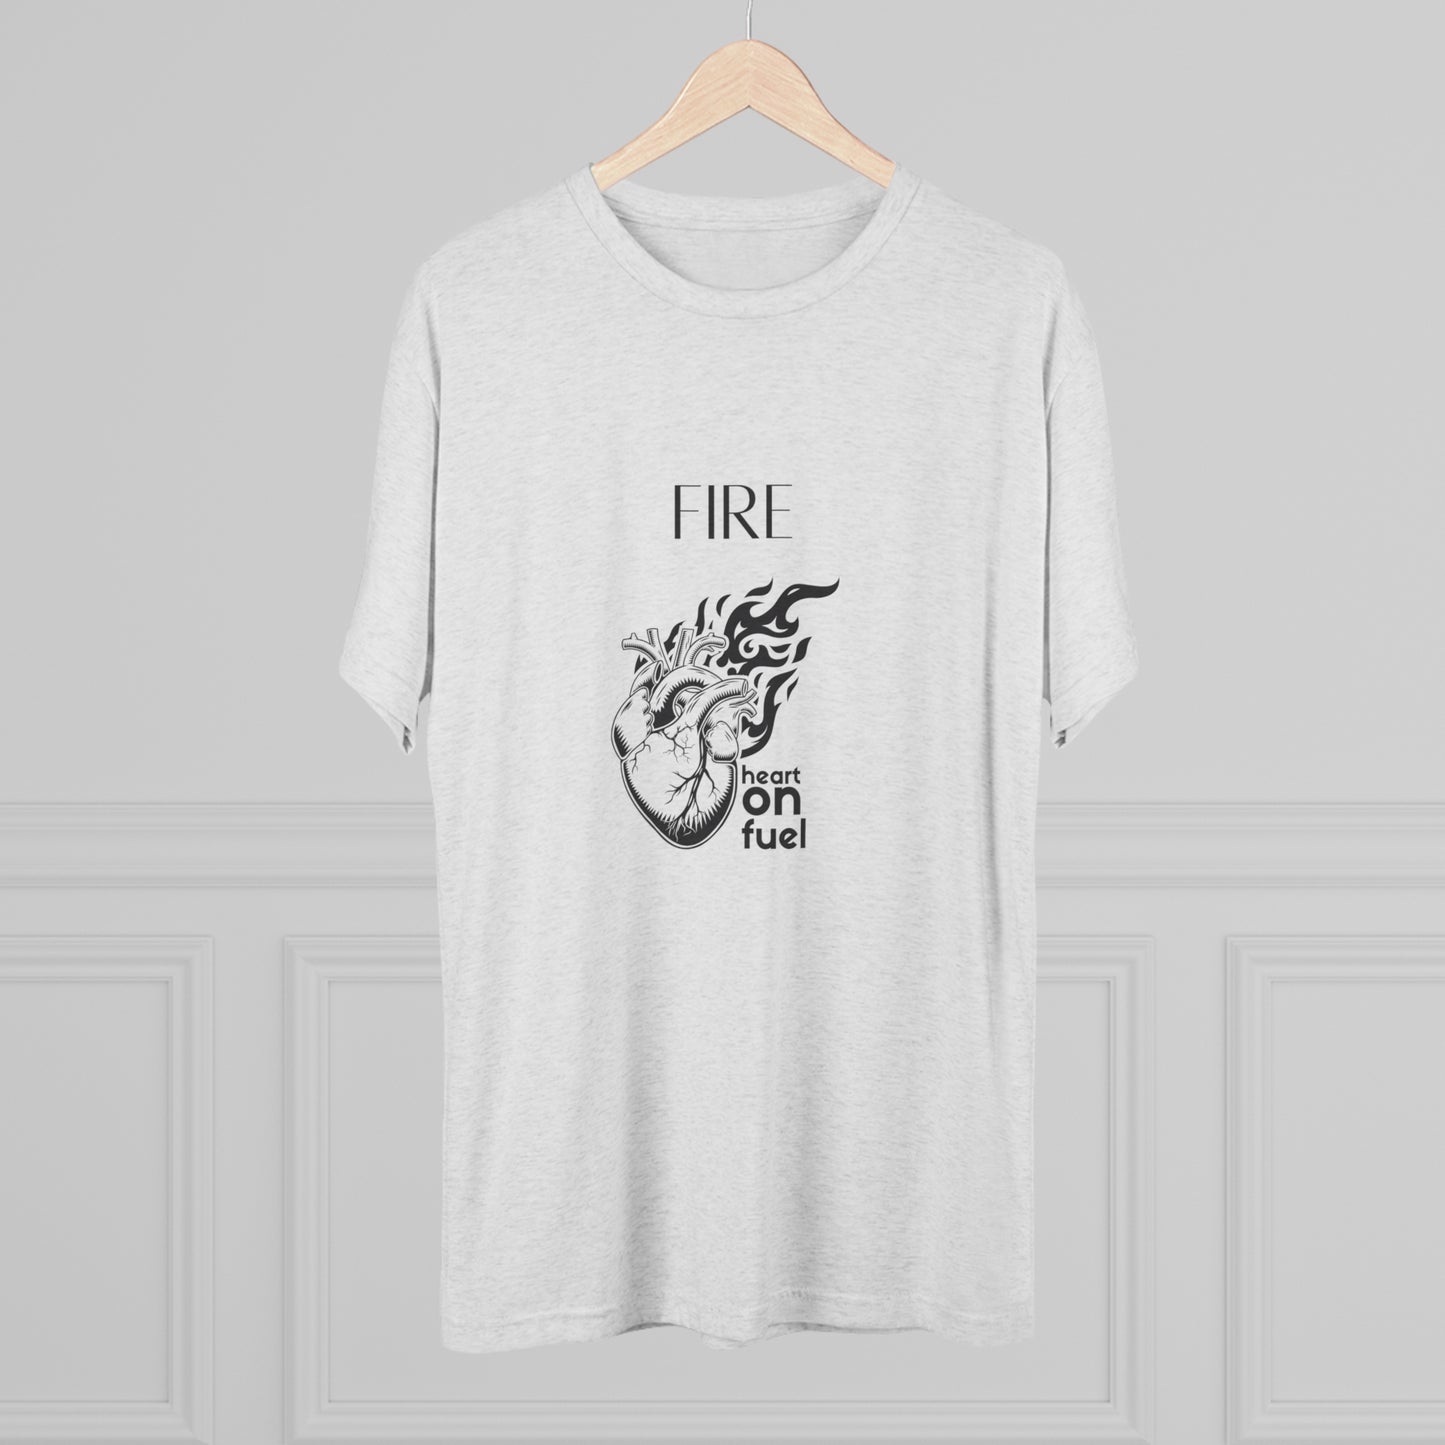 "Fire" Heart on Fuel T-shirt